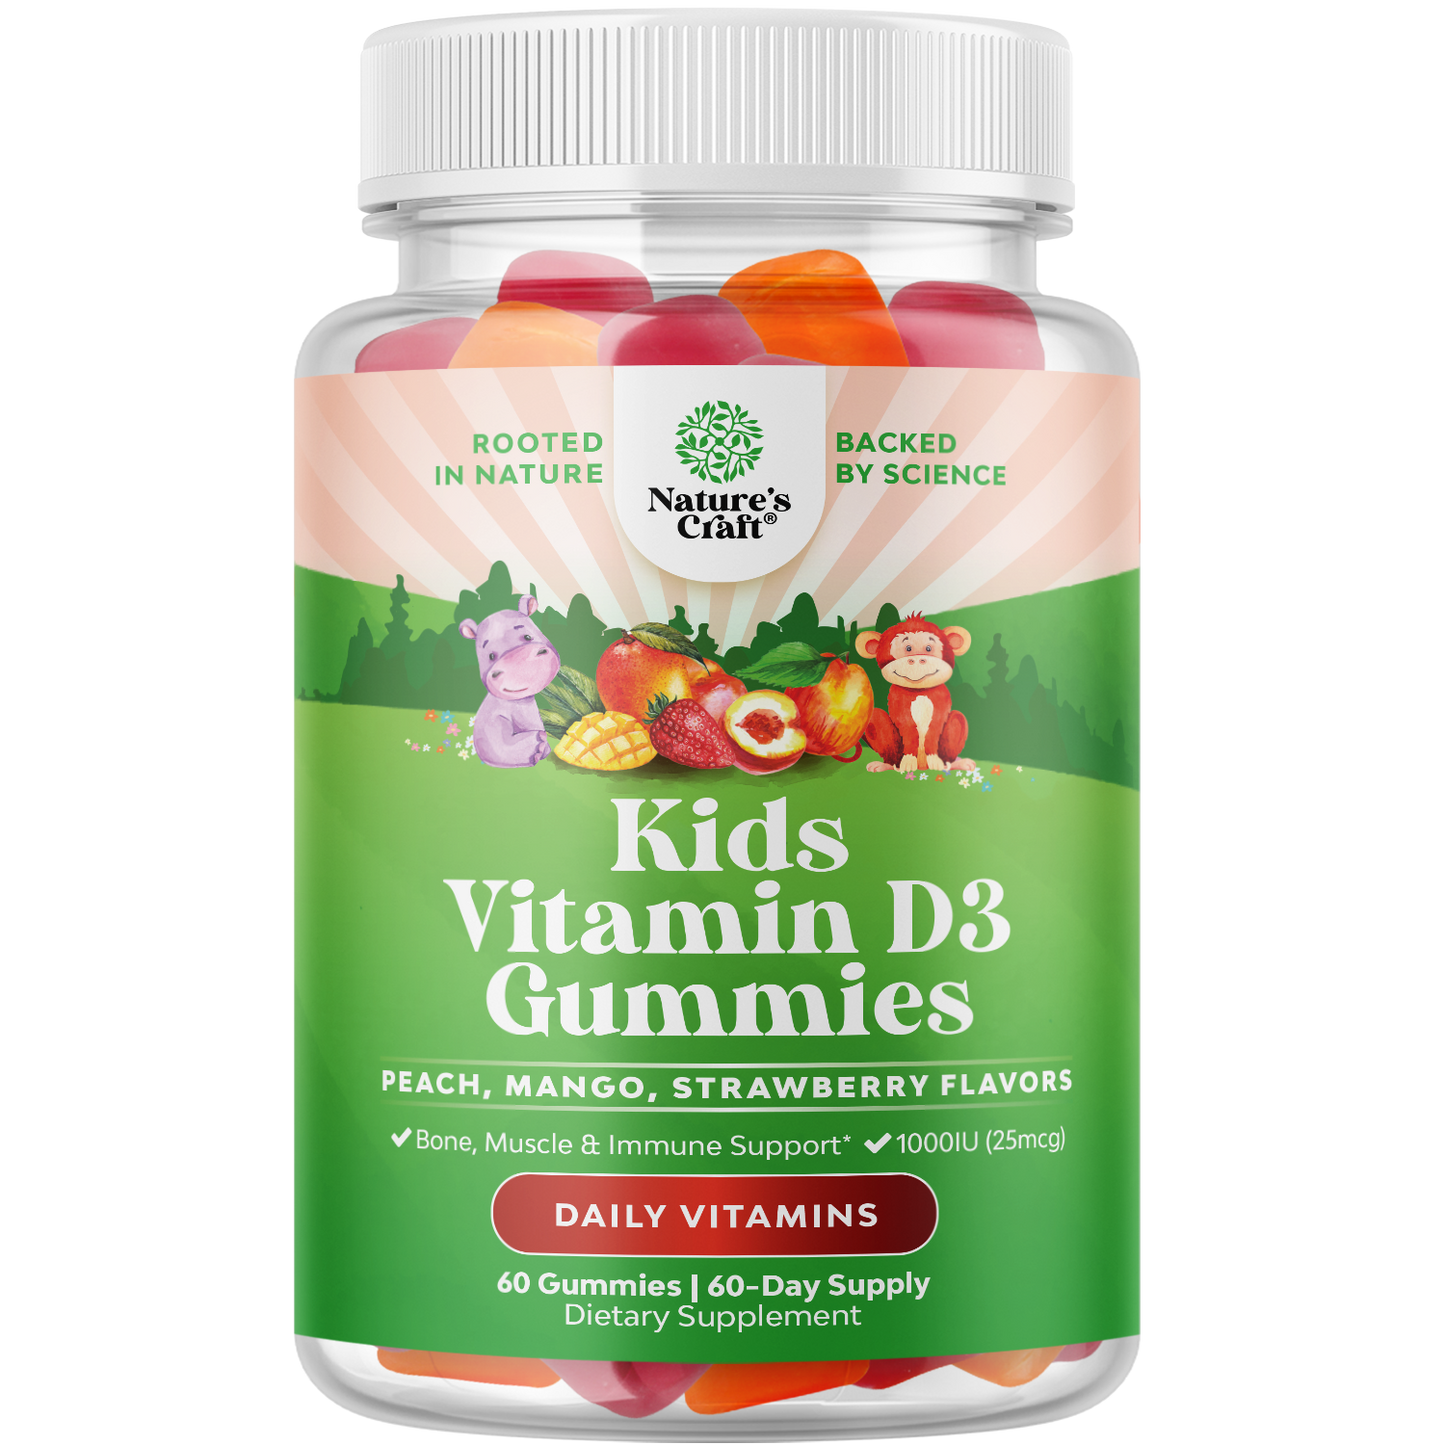 Kids Vitamin D3 Gummies 1000 IU per serving - 60 Gummies